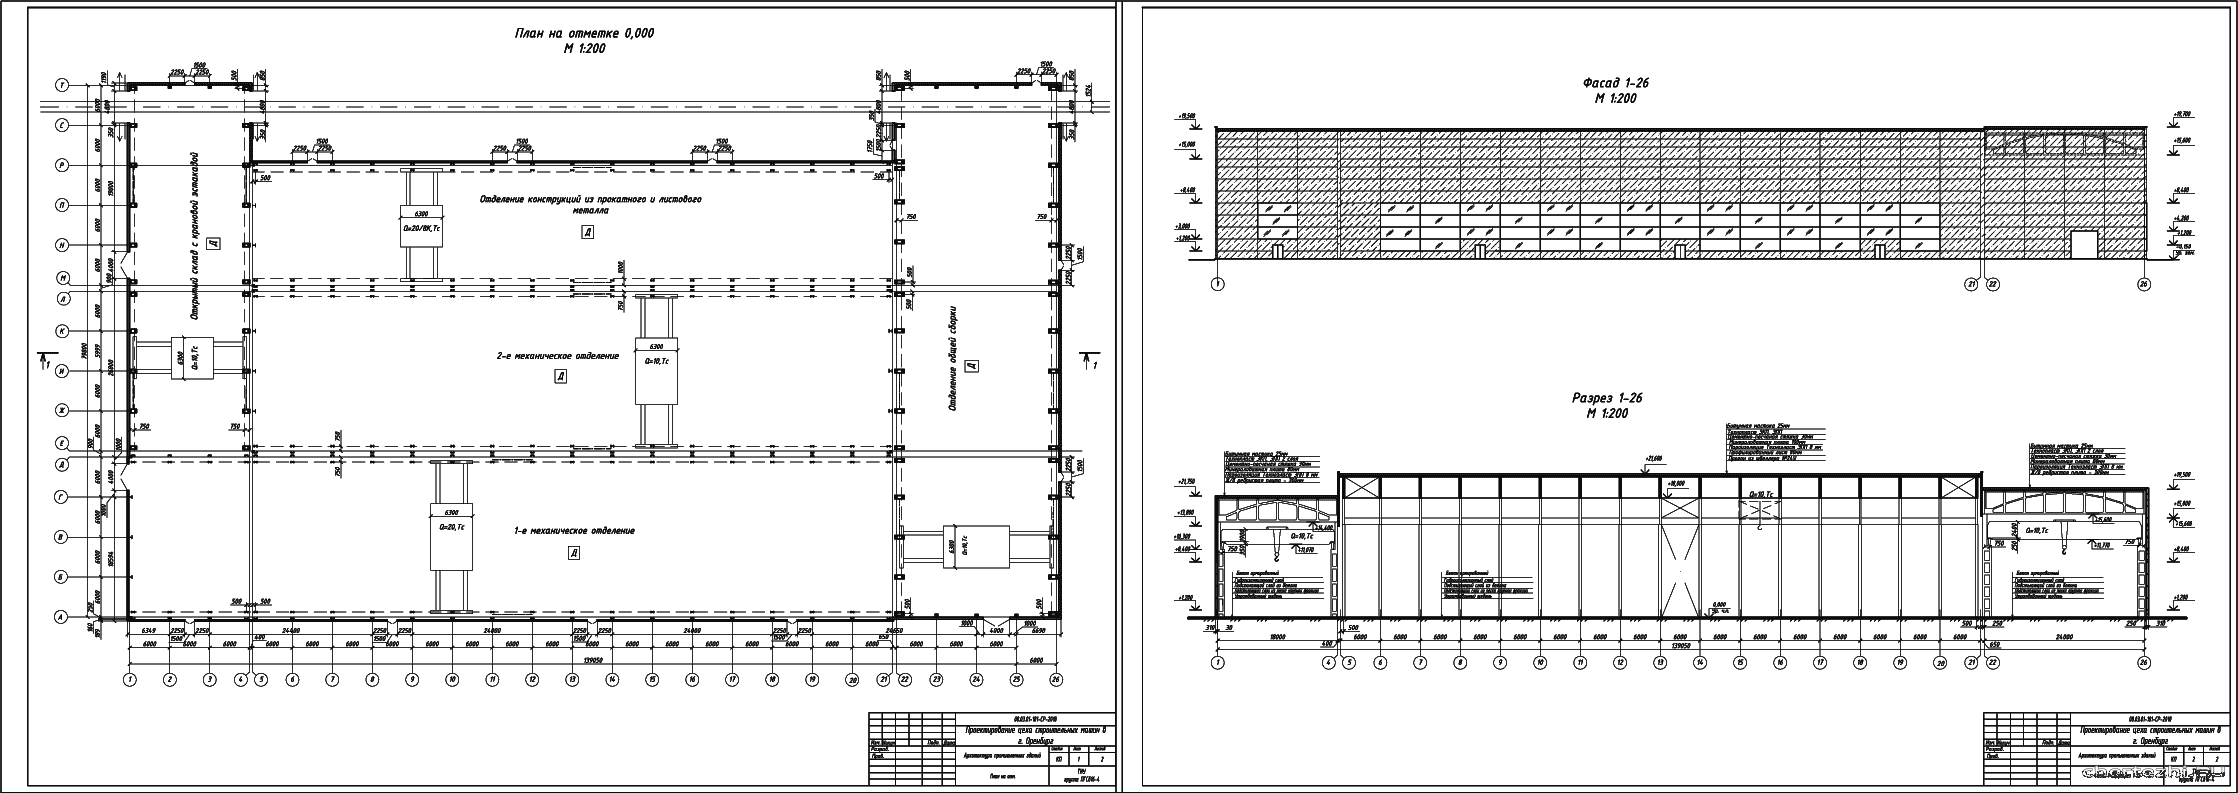 Курсовой проект - Проектирование цеха строительных машин 139,05 х 79,80 м в г. Оренбург